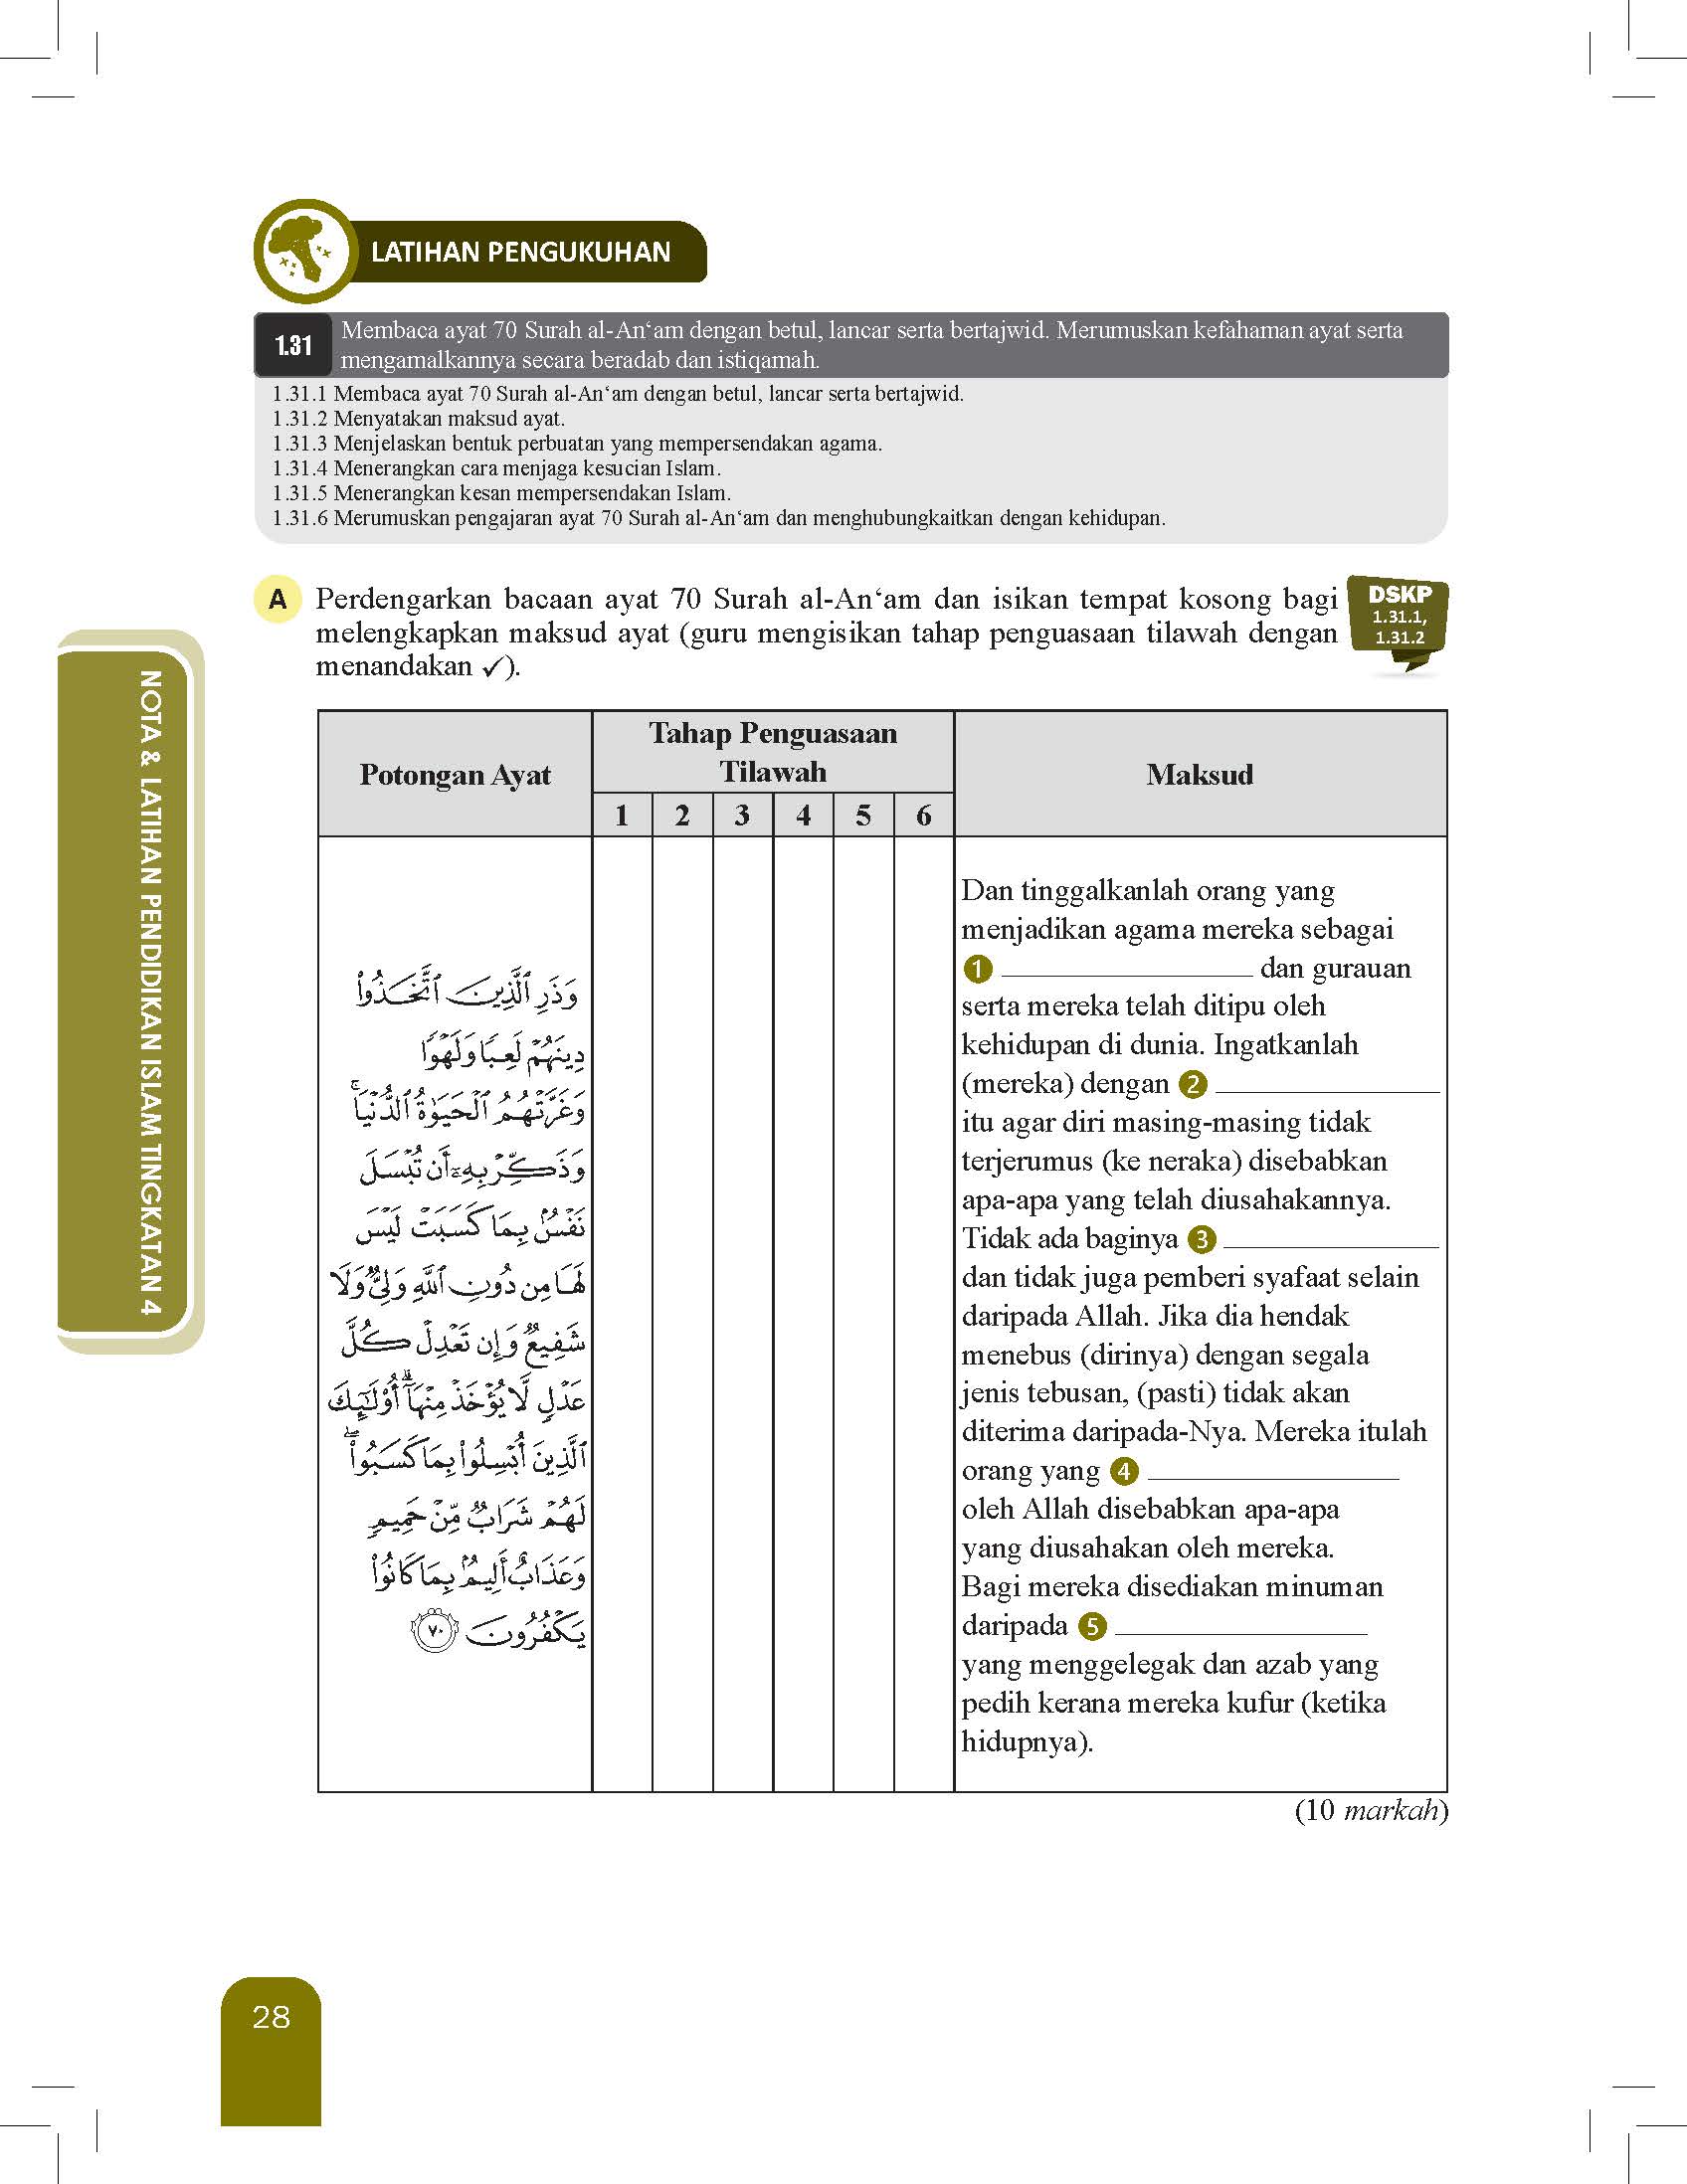 Great Impact Nota Dan Latihan Pendidikan Islam Tingkatan 4 - (TBBS1286)